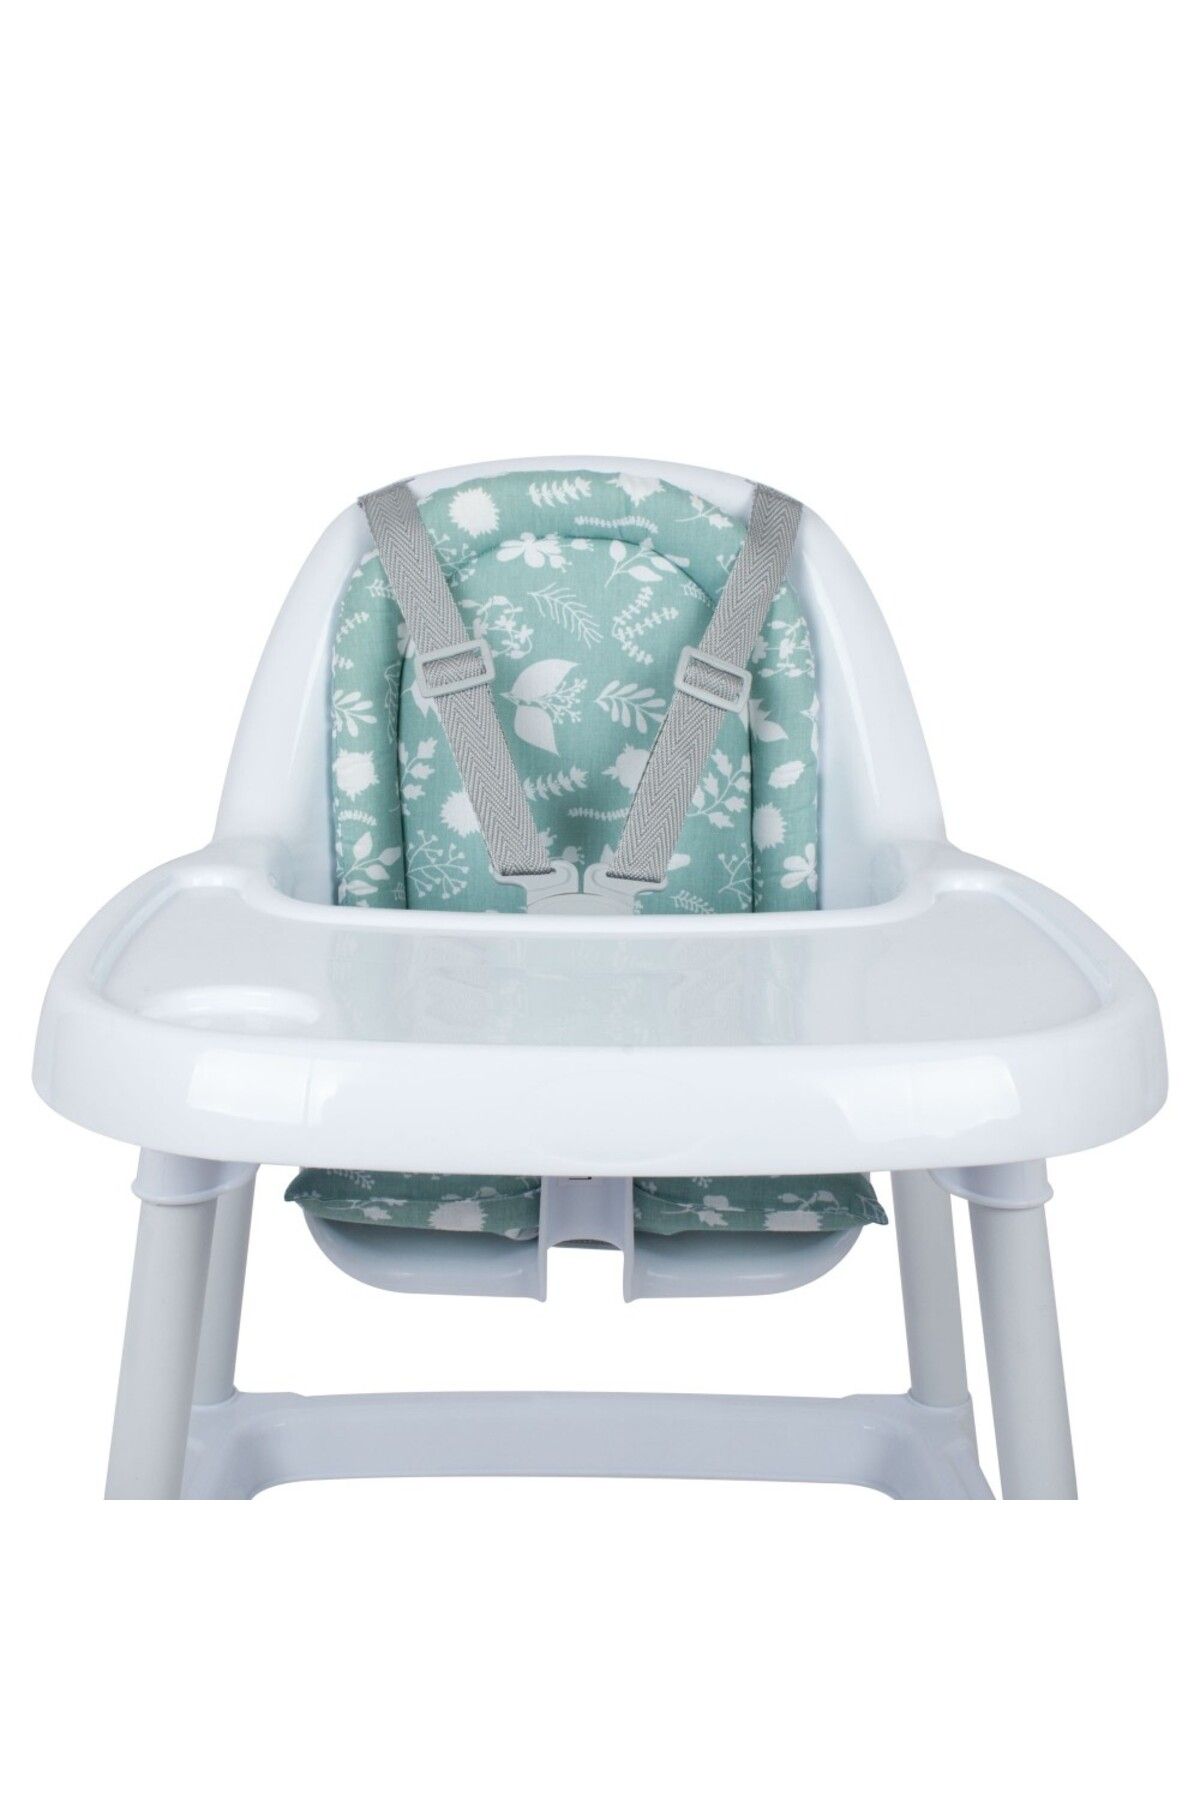 Sevi Bebe Eko Mama Sandalyesi Minderi Art-157 Yaprak Desen Brnm [Gymbrnm]